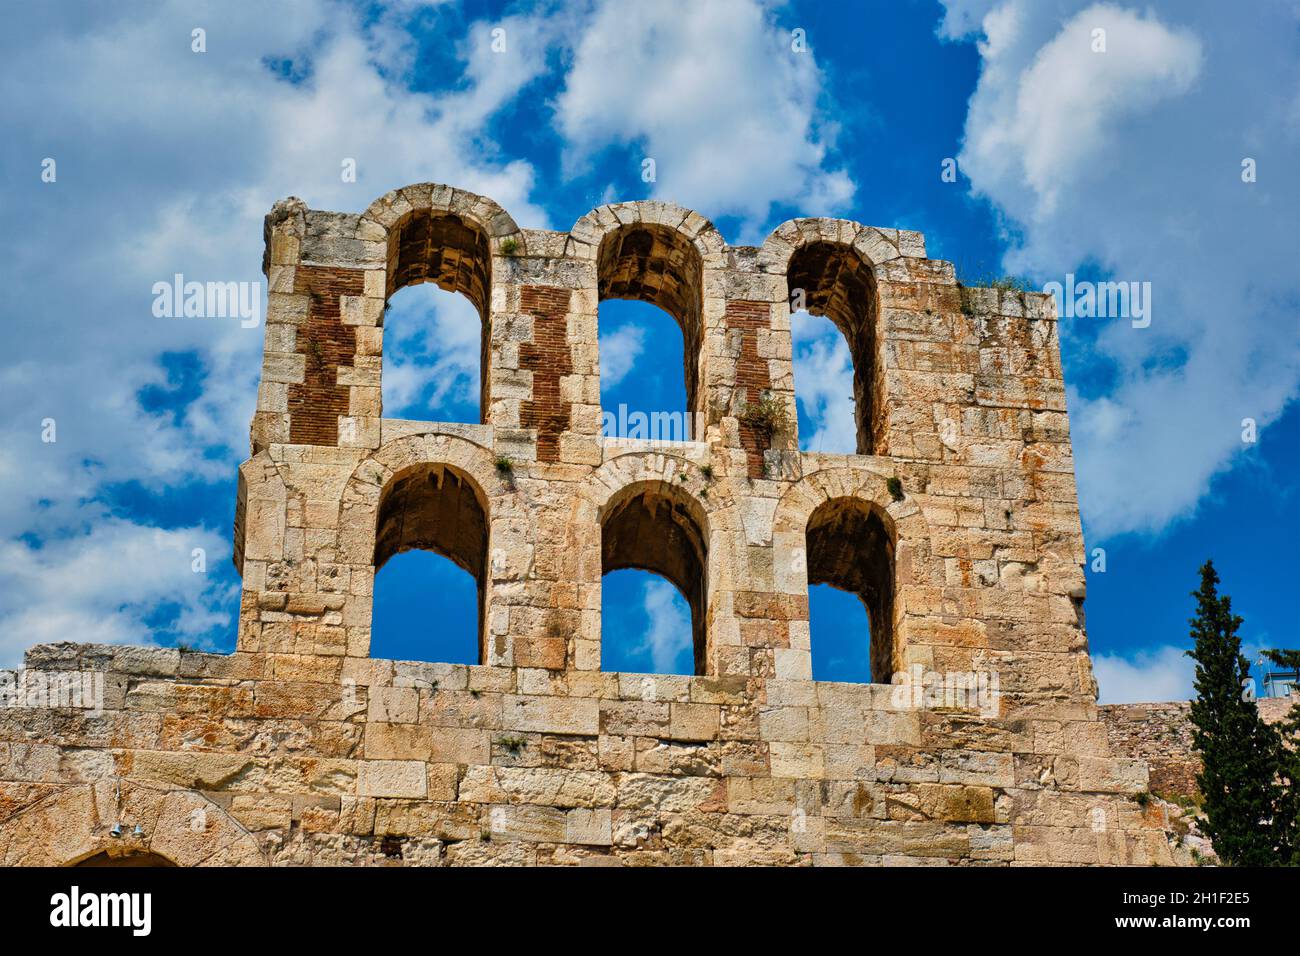 Ruines d'Odeon de Herodes Atticus ancien théâtre romain en pierre situé sur la pente sud-ouest de la colline de l'Acropole d'Athènes, Grèce. Athènes, Grèce Banque D'Images